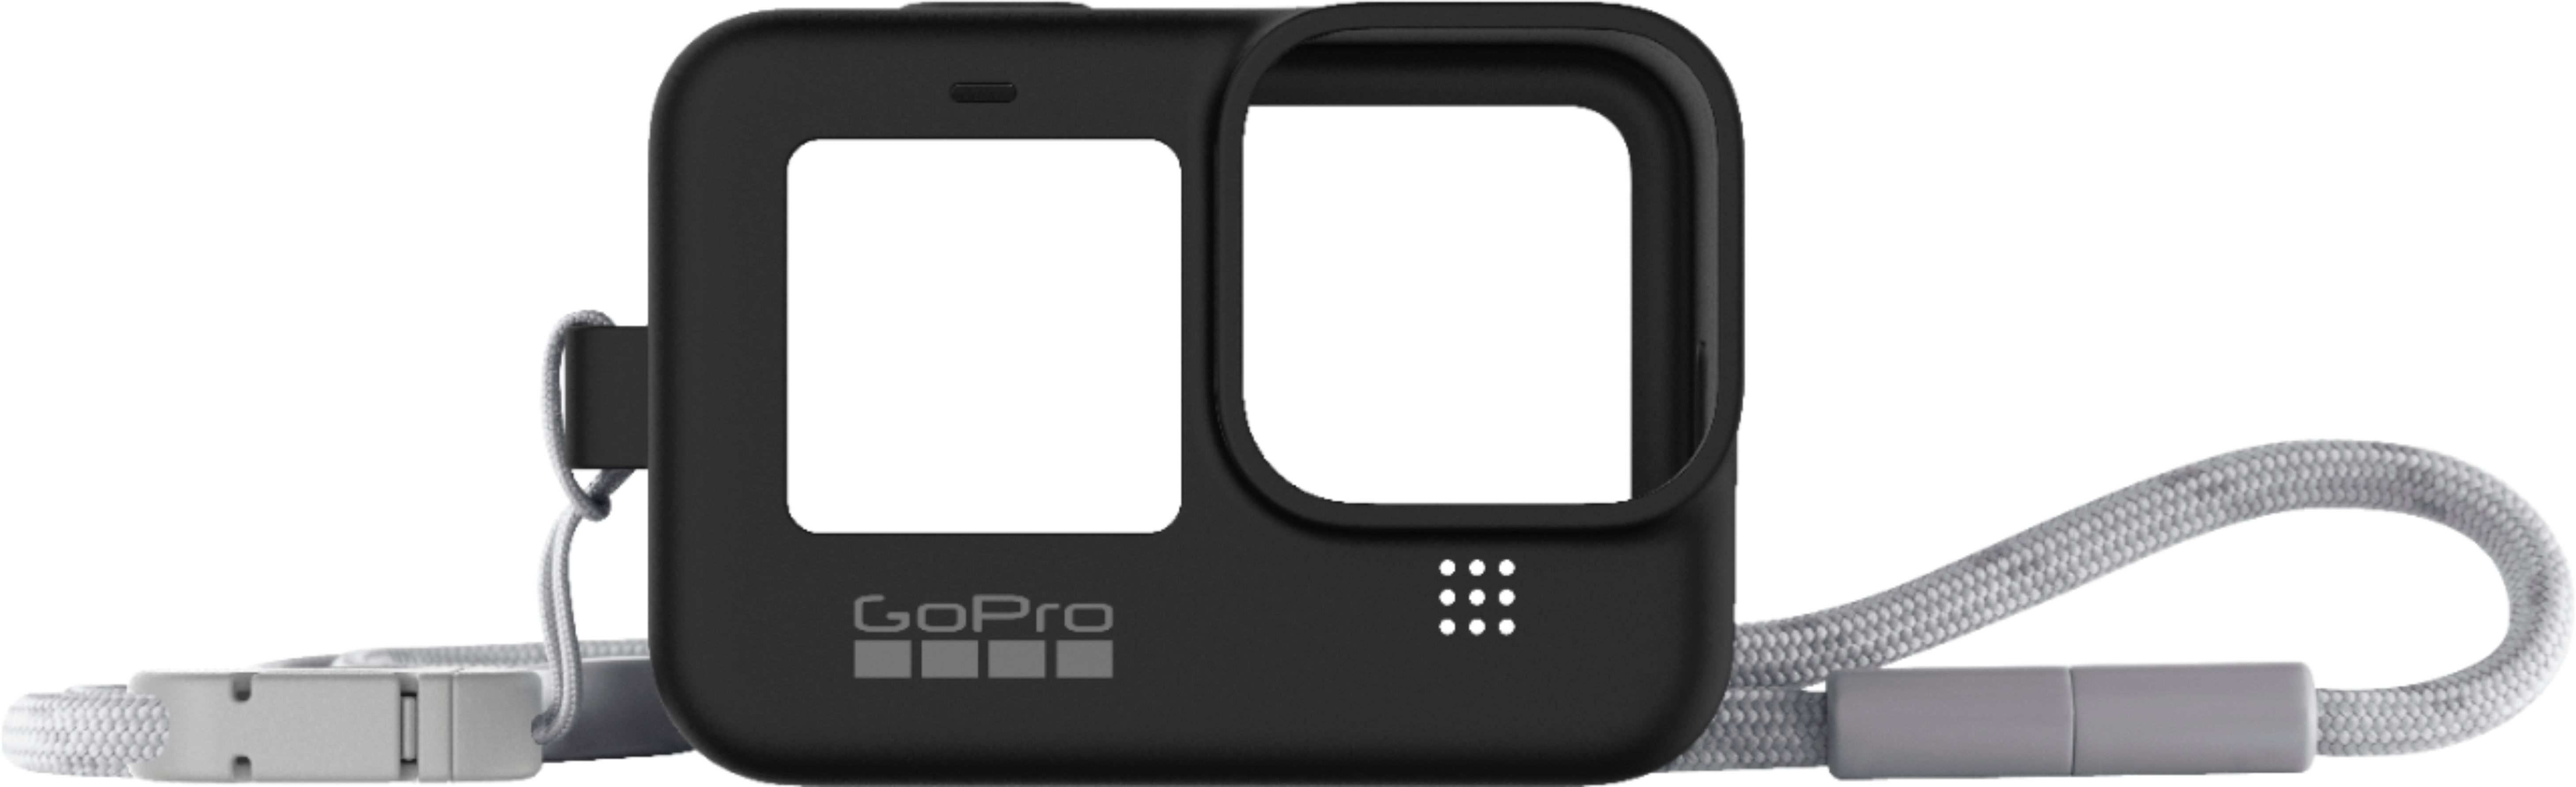 Accessoires GoPro HERO10 Black + étui B&W Type 1000 noir - Foto Erhardt